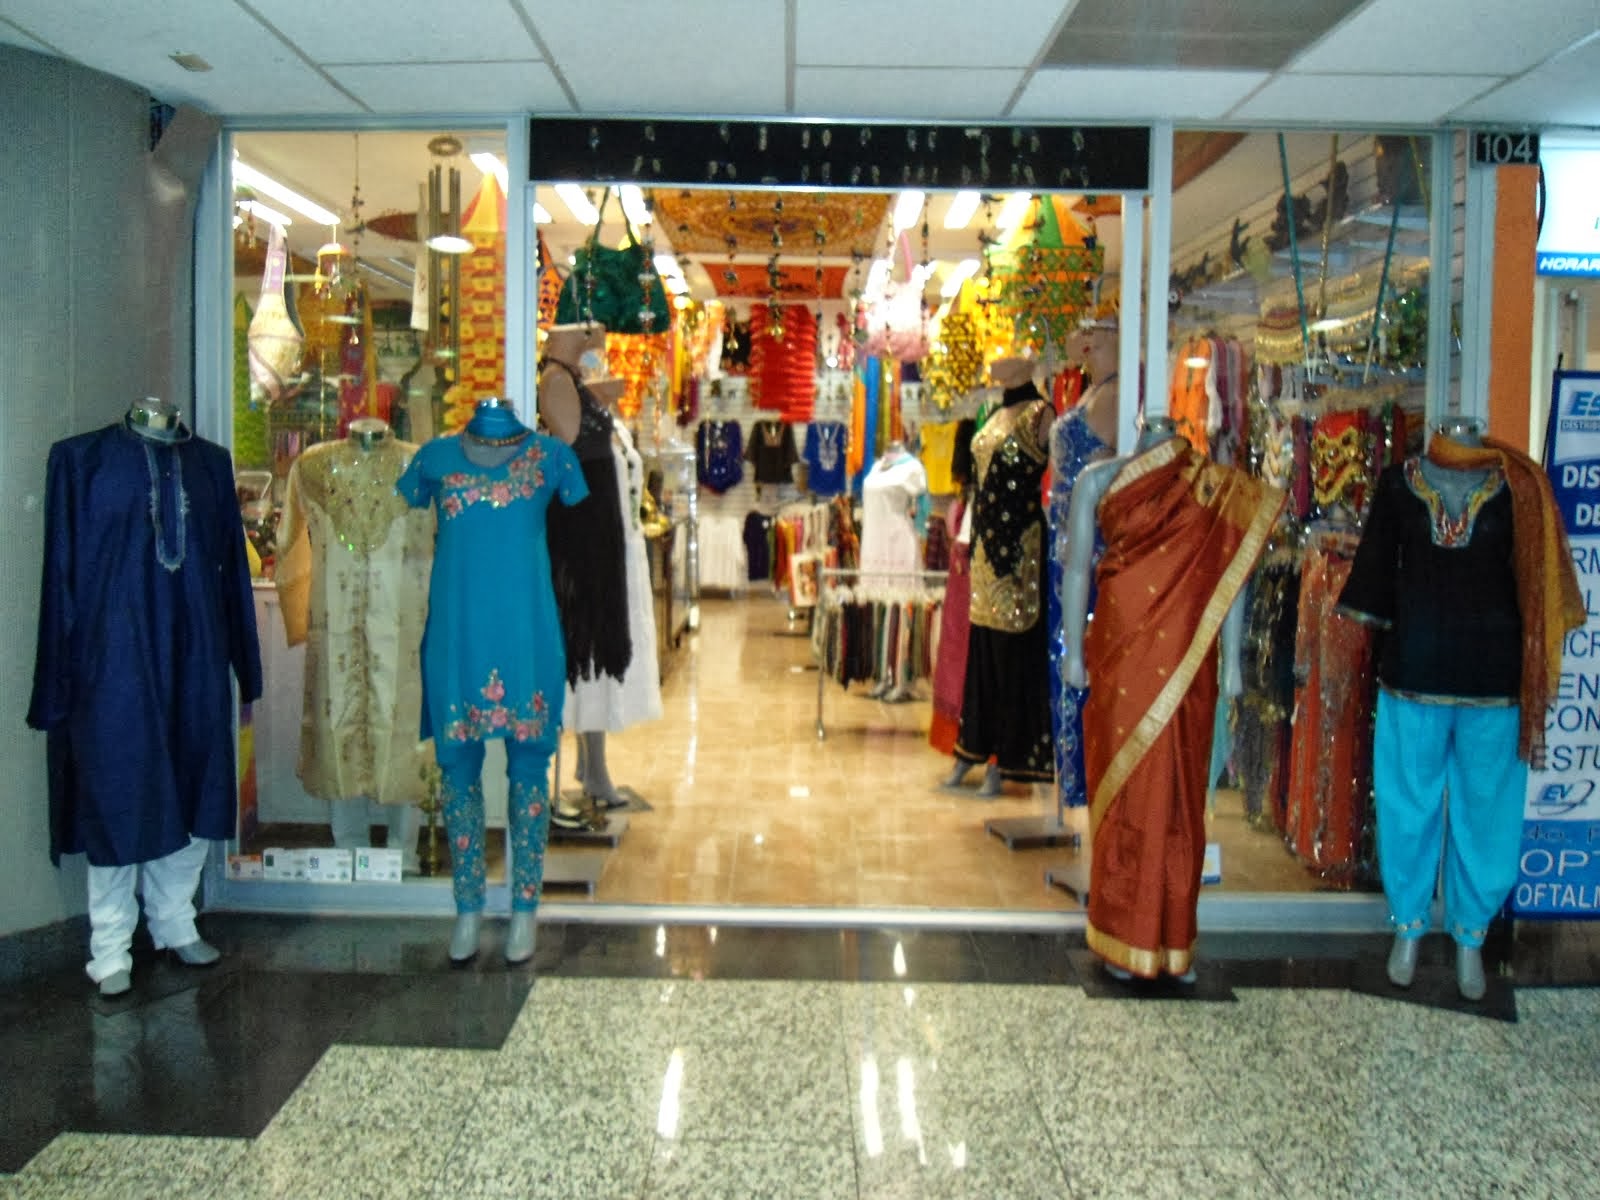 VISITA LA BOUTIQUE ..GOPINATH BAZAR .( fashion of india )DONDE ENCONTRARAS articulos incomparables